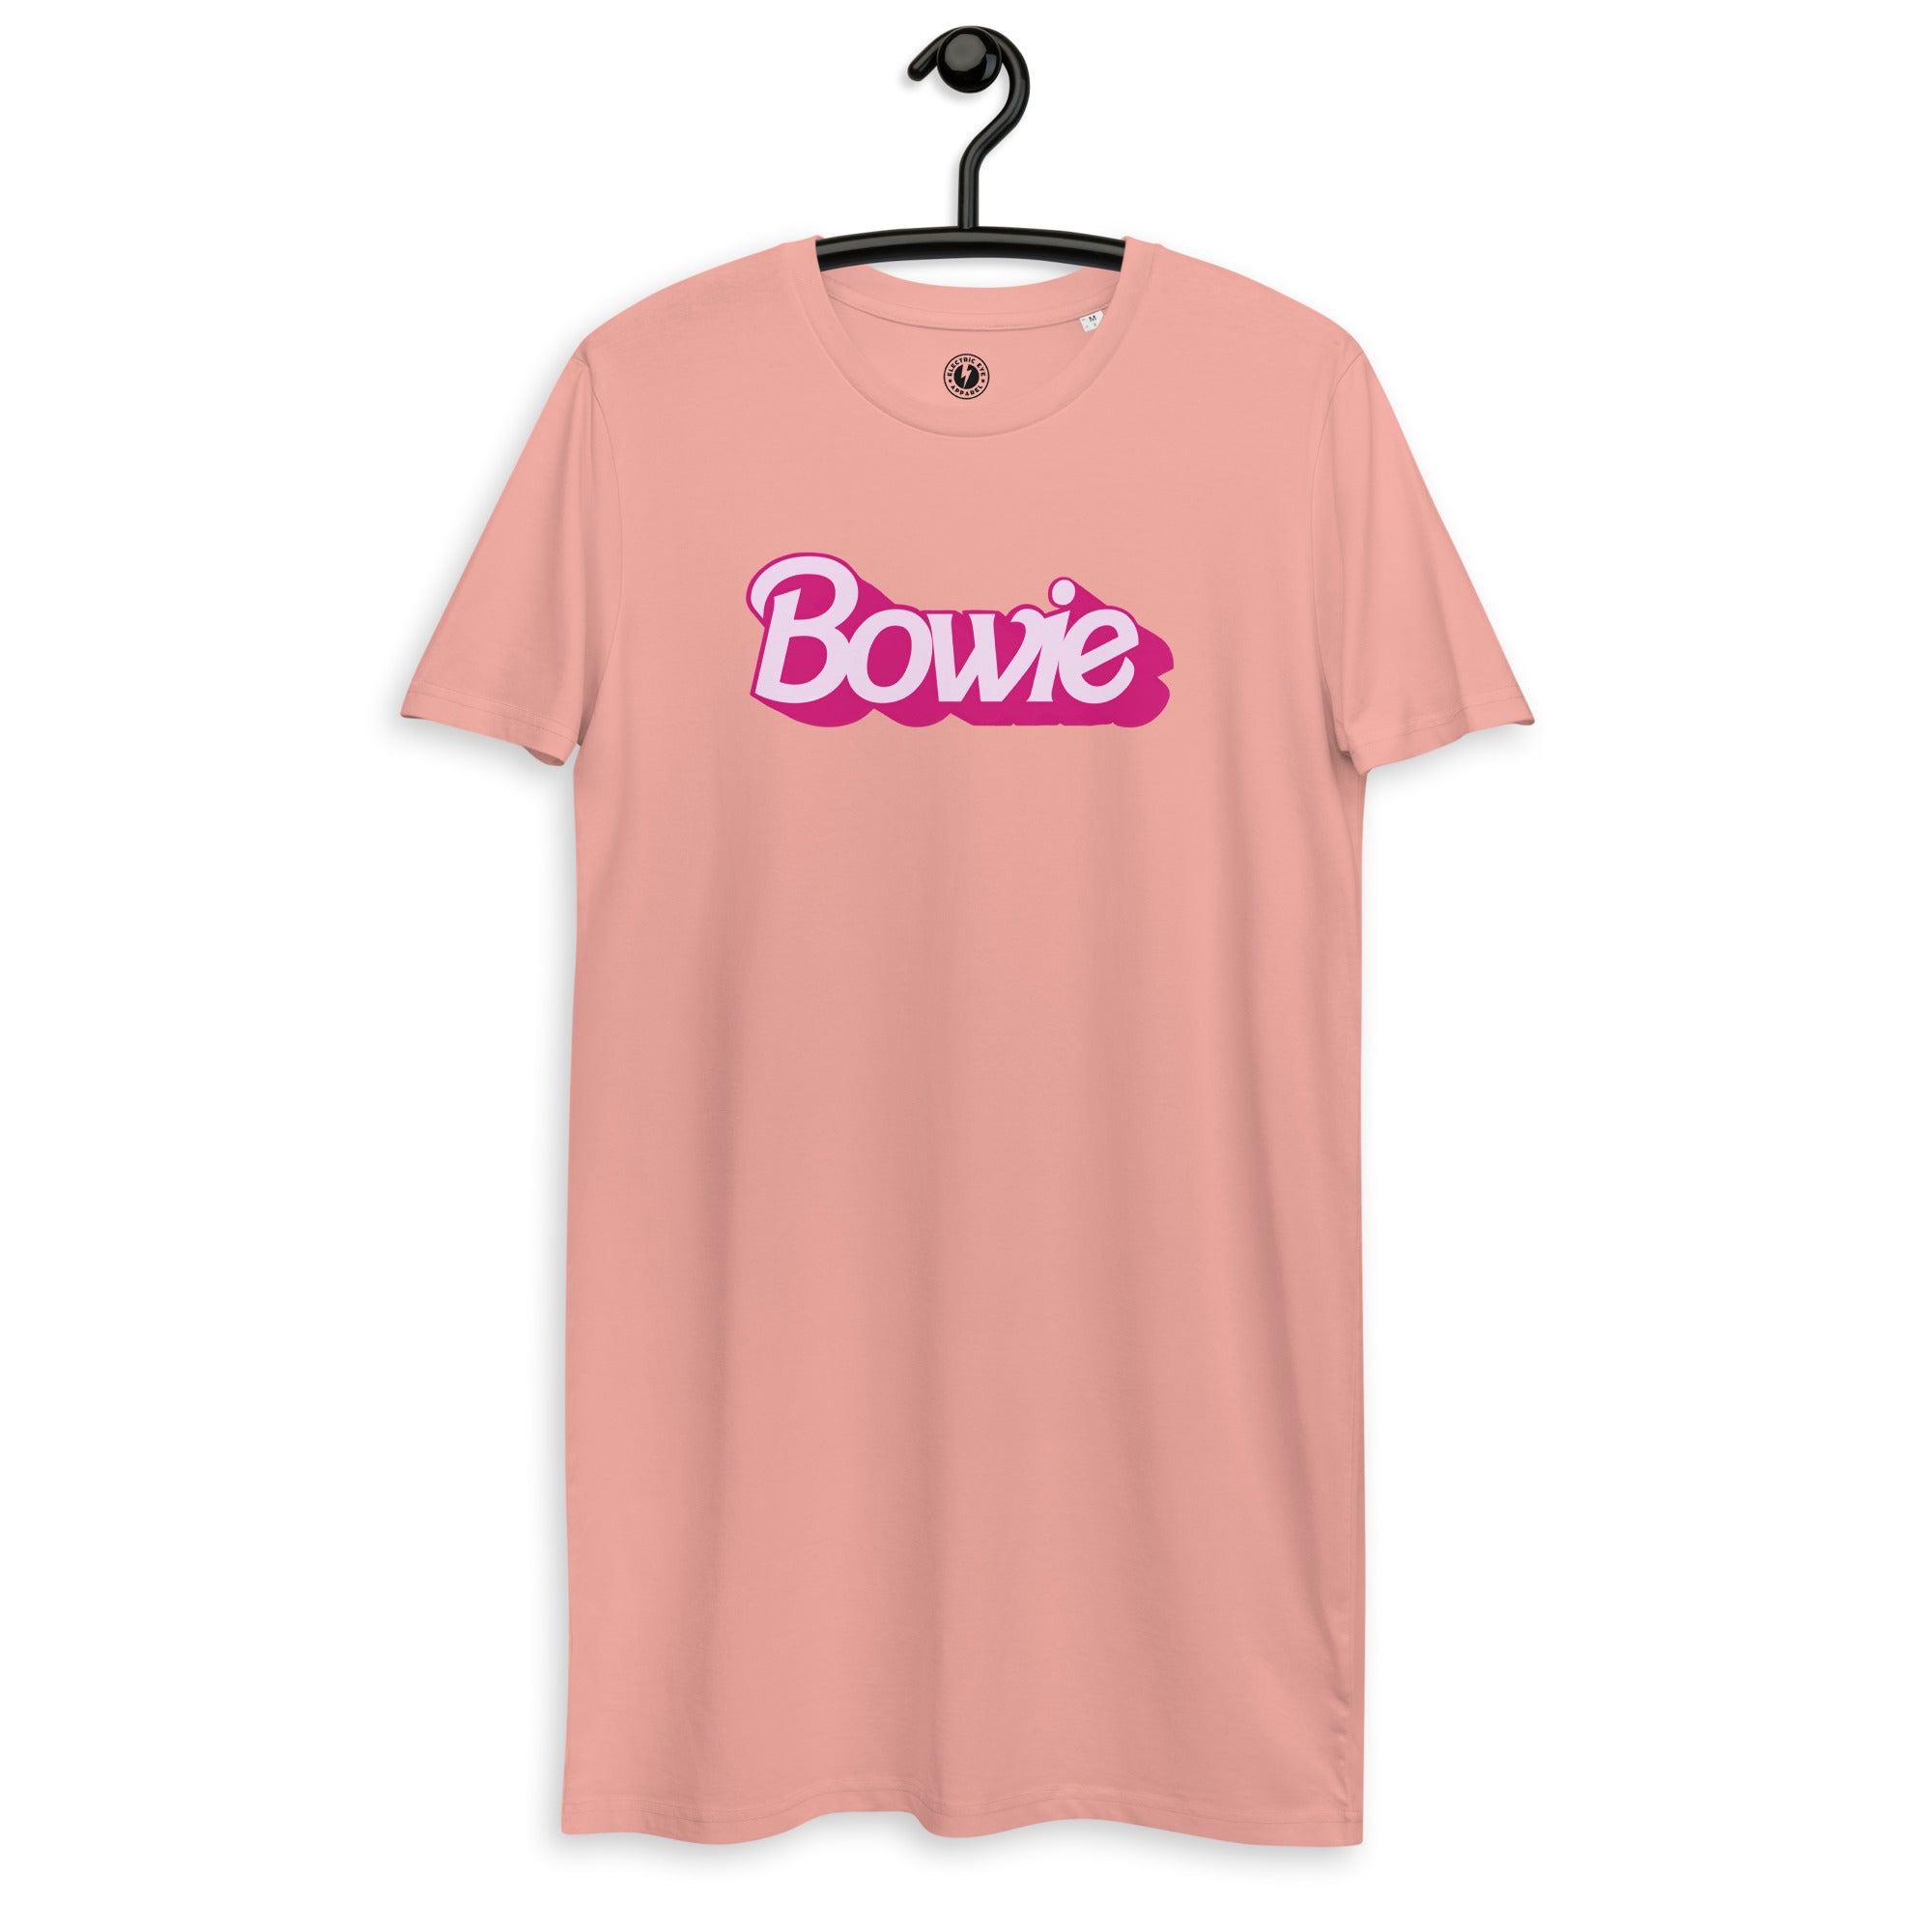 Bowie (fuente de muñeca famosa) Vestido estilo camiseta de algodón orgánico estampado